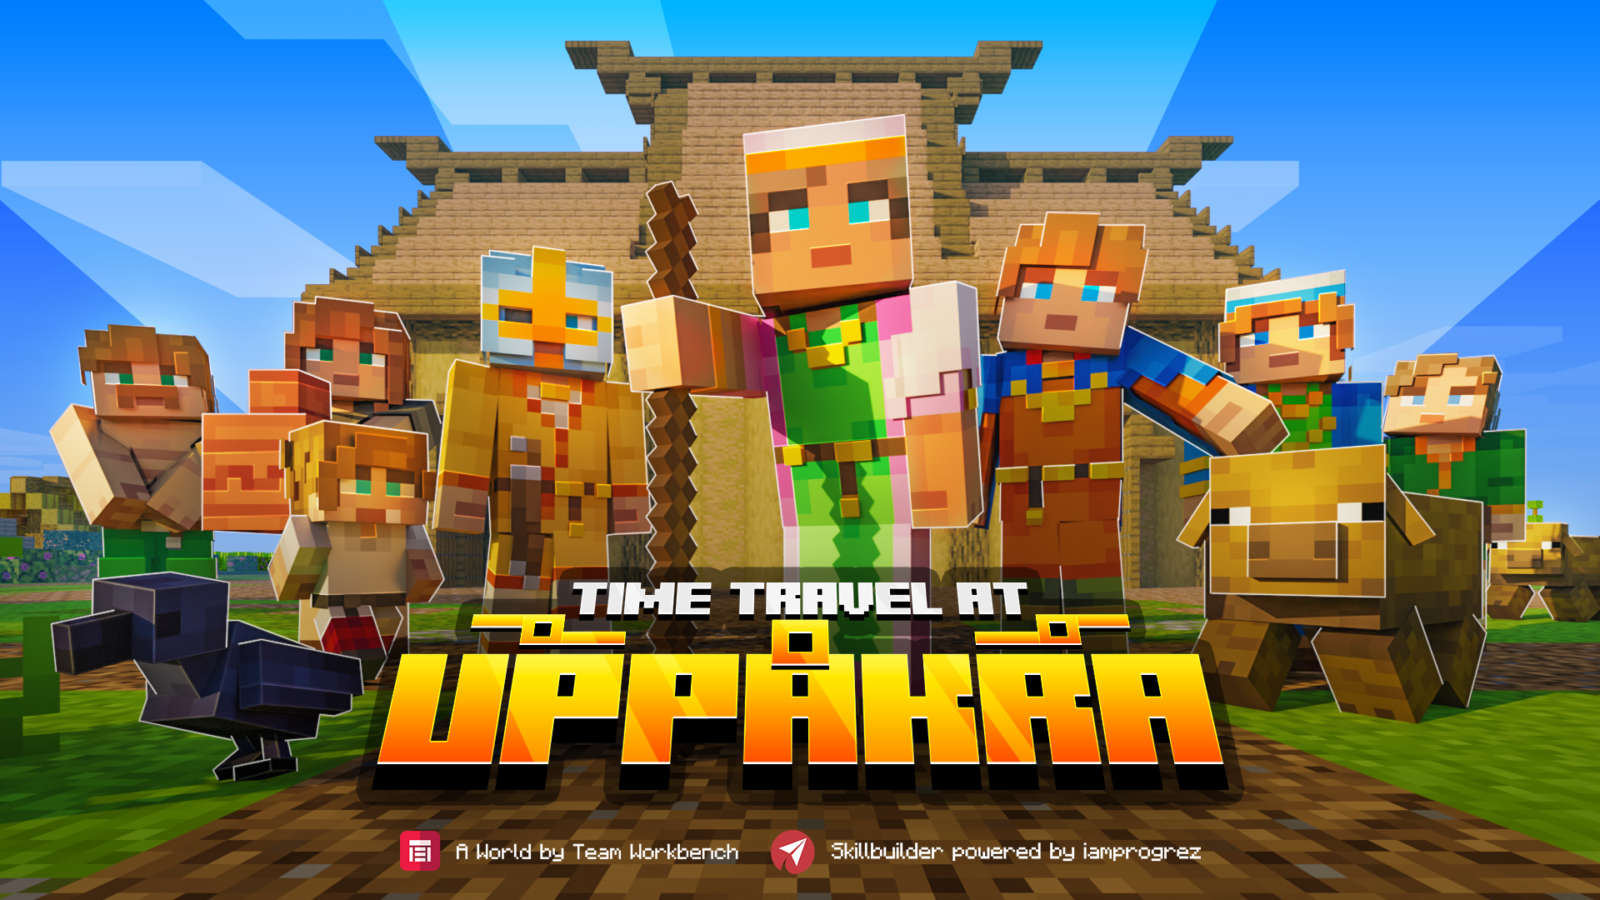 Tidsrejse på Uppakra Minecraft skærmbillede